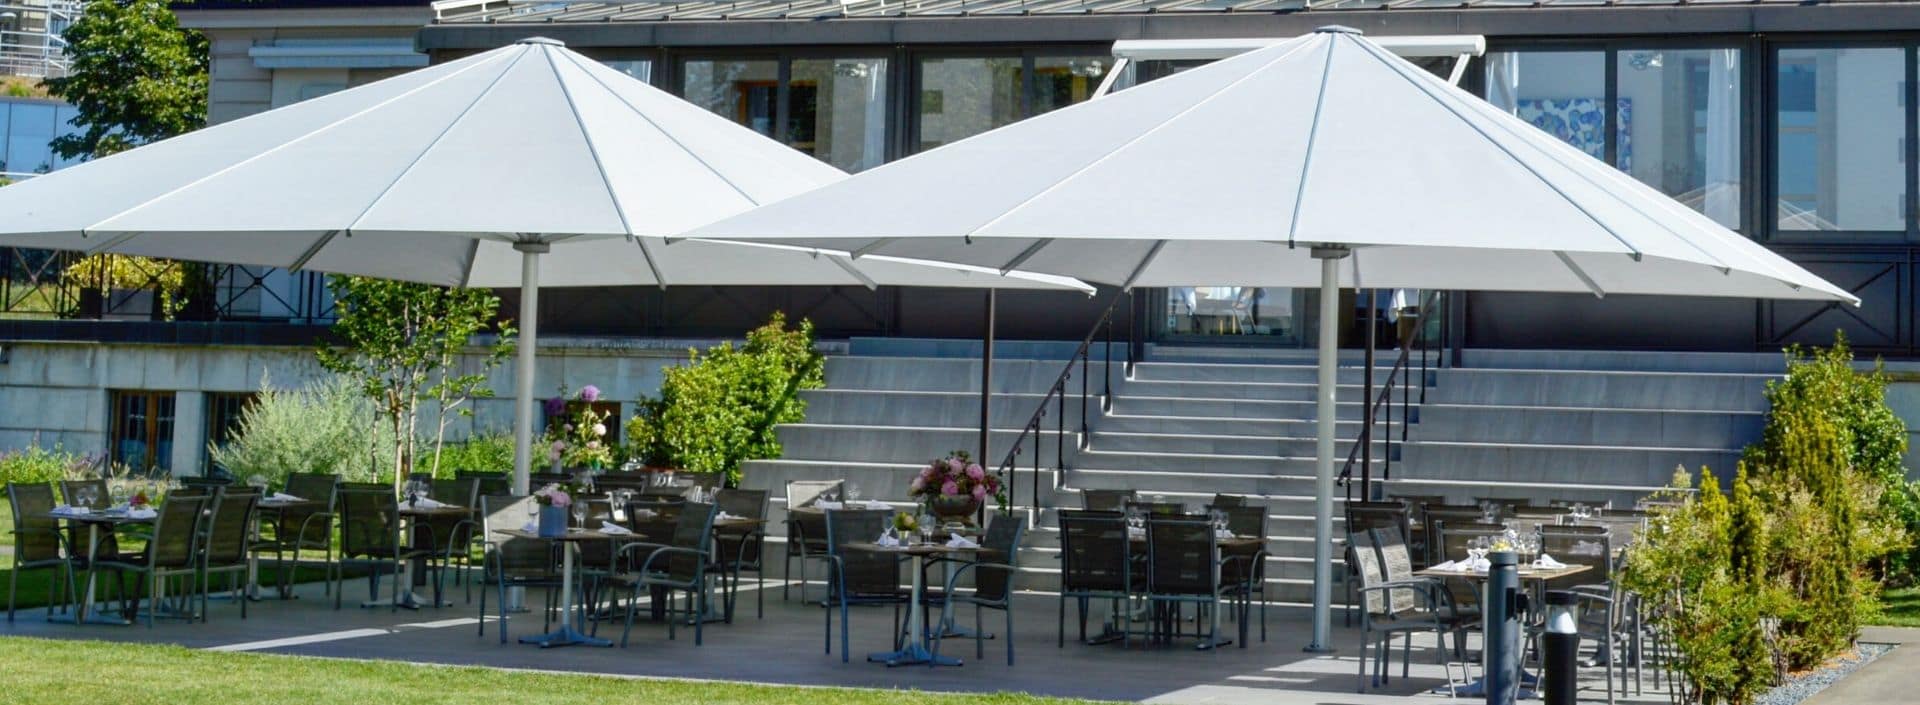 Restaurant avec terrasse a Genève - Restaurant with Terrace in Geneva -